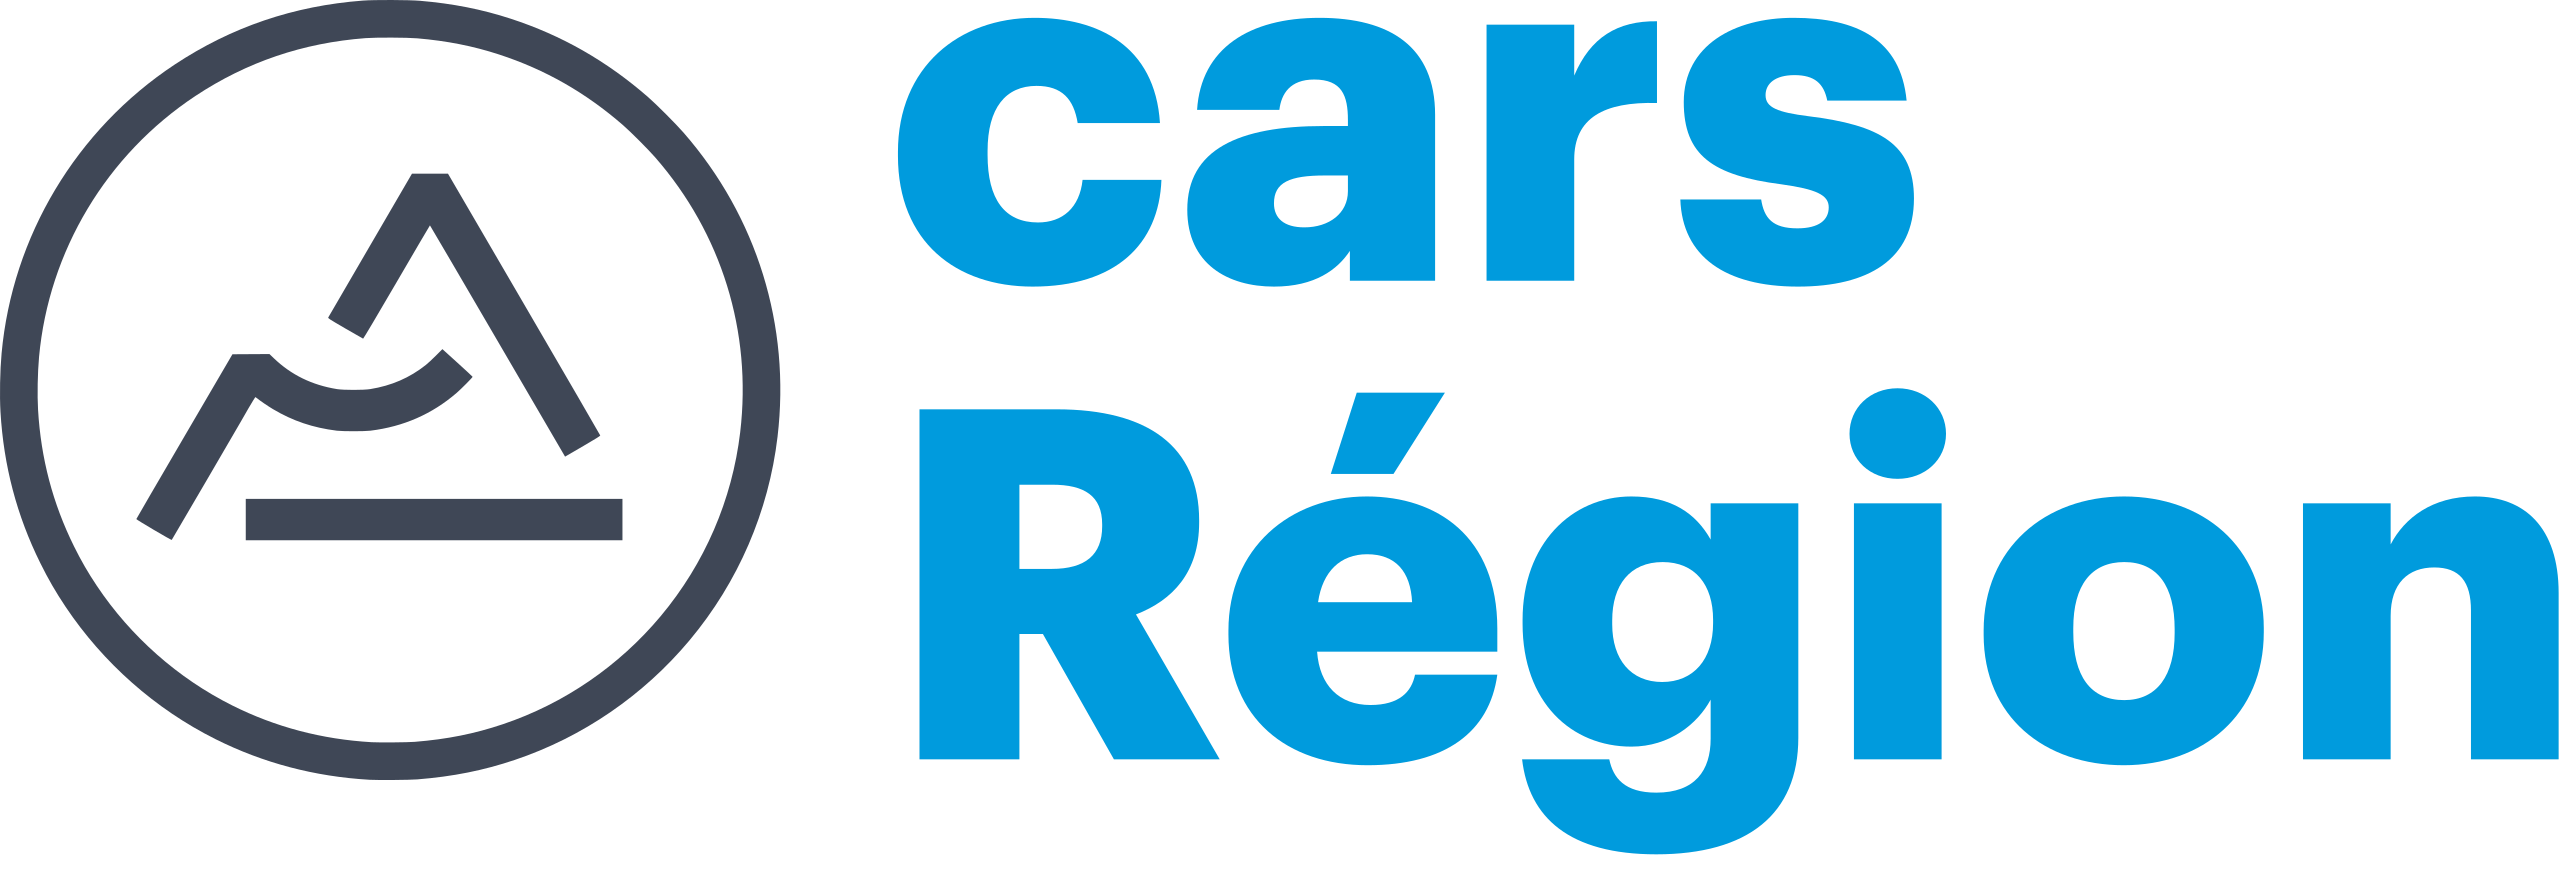 Logo_Cars_Région.svg